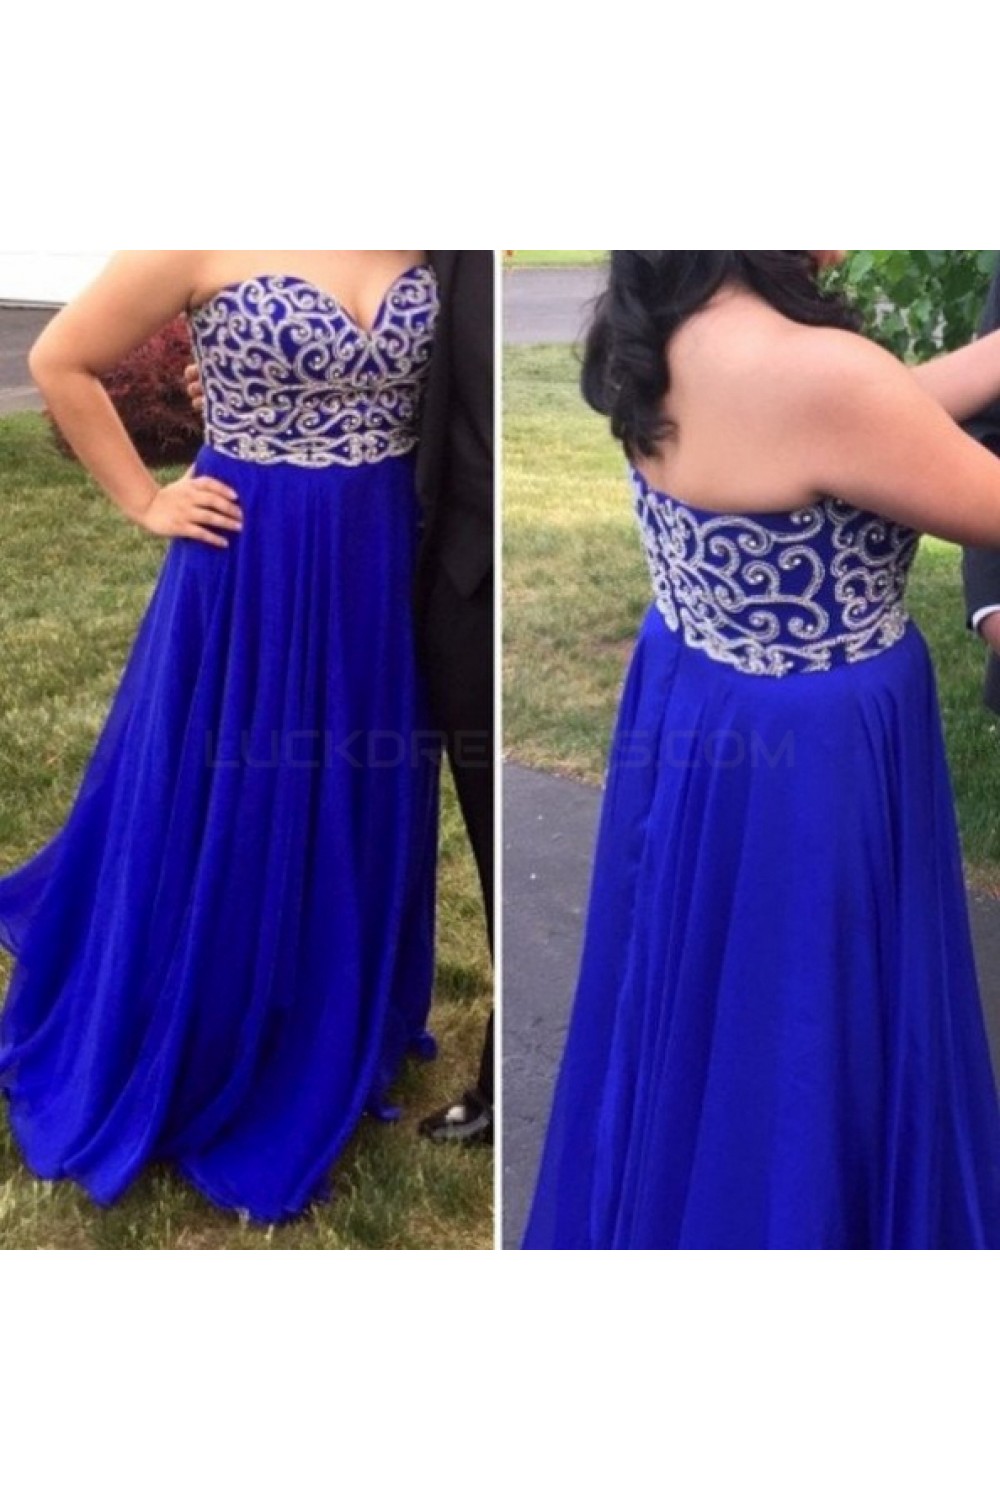 royal blue plus size formal dress